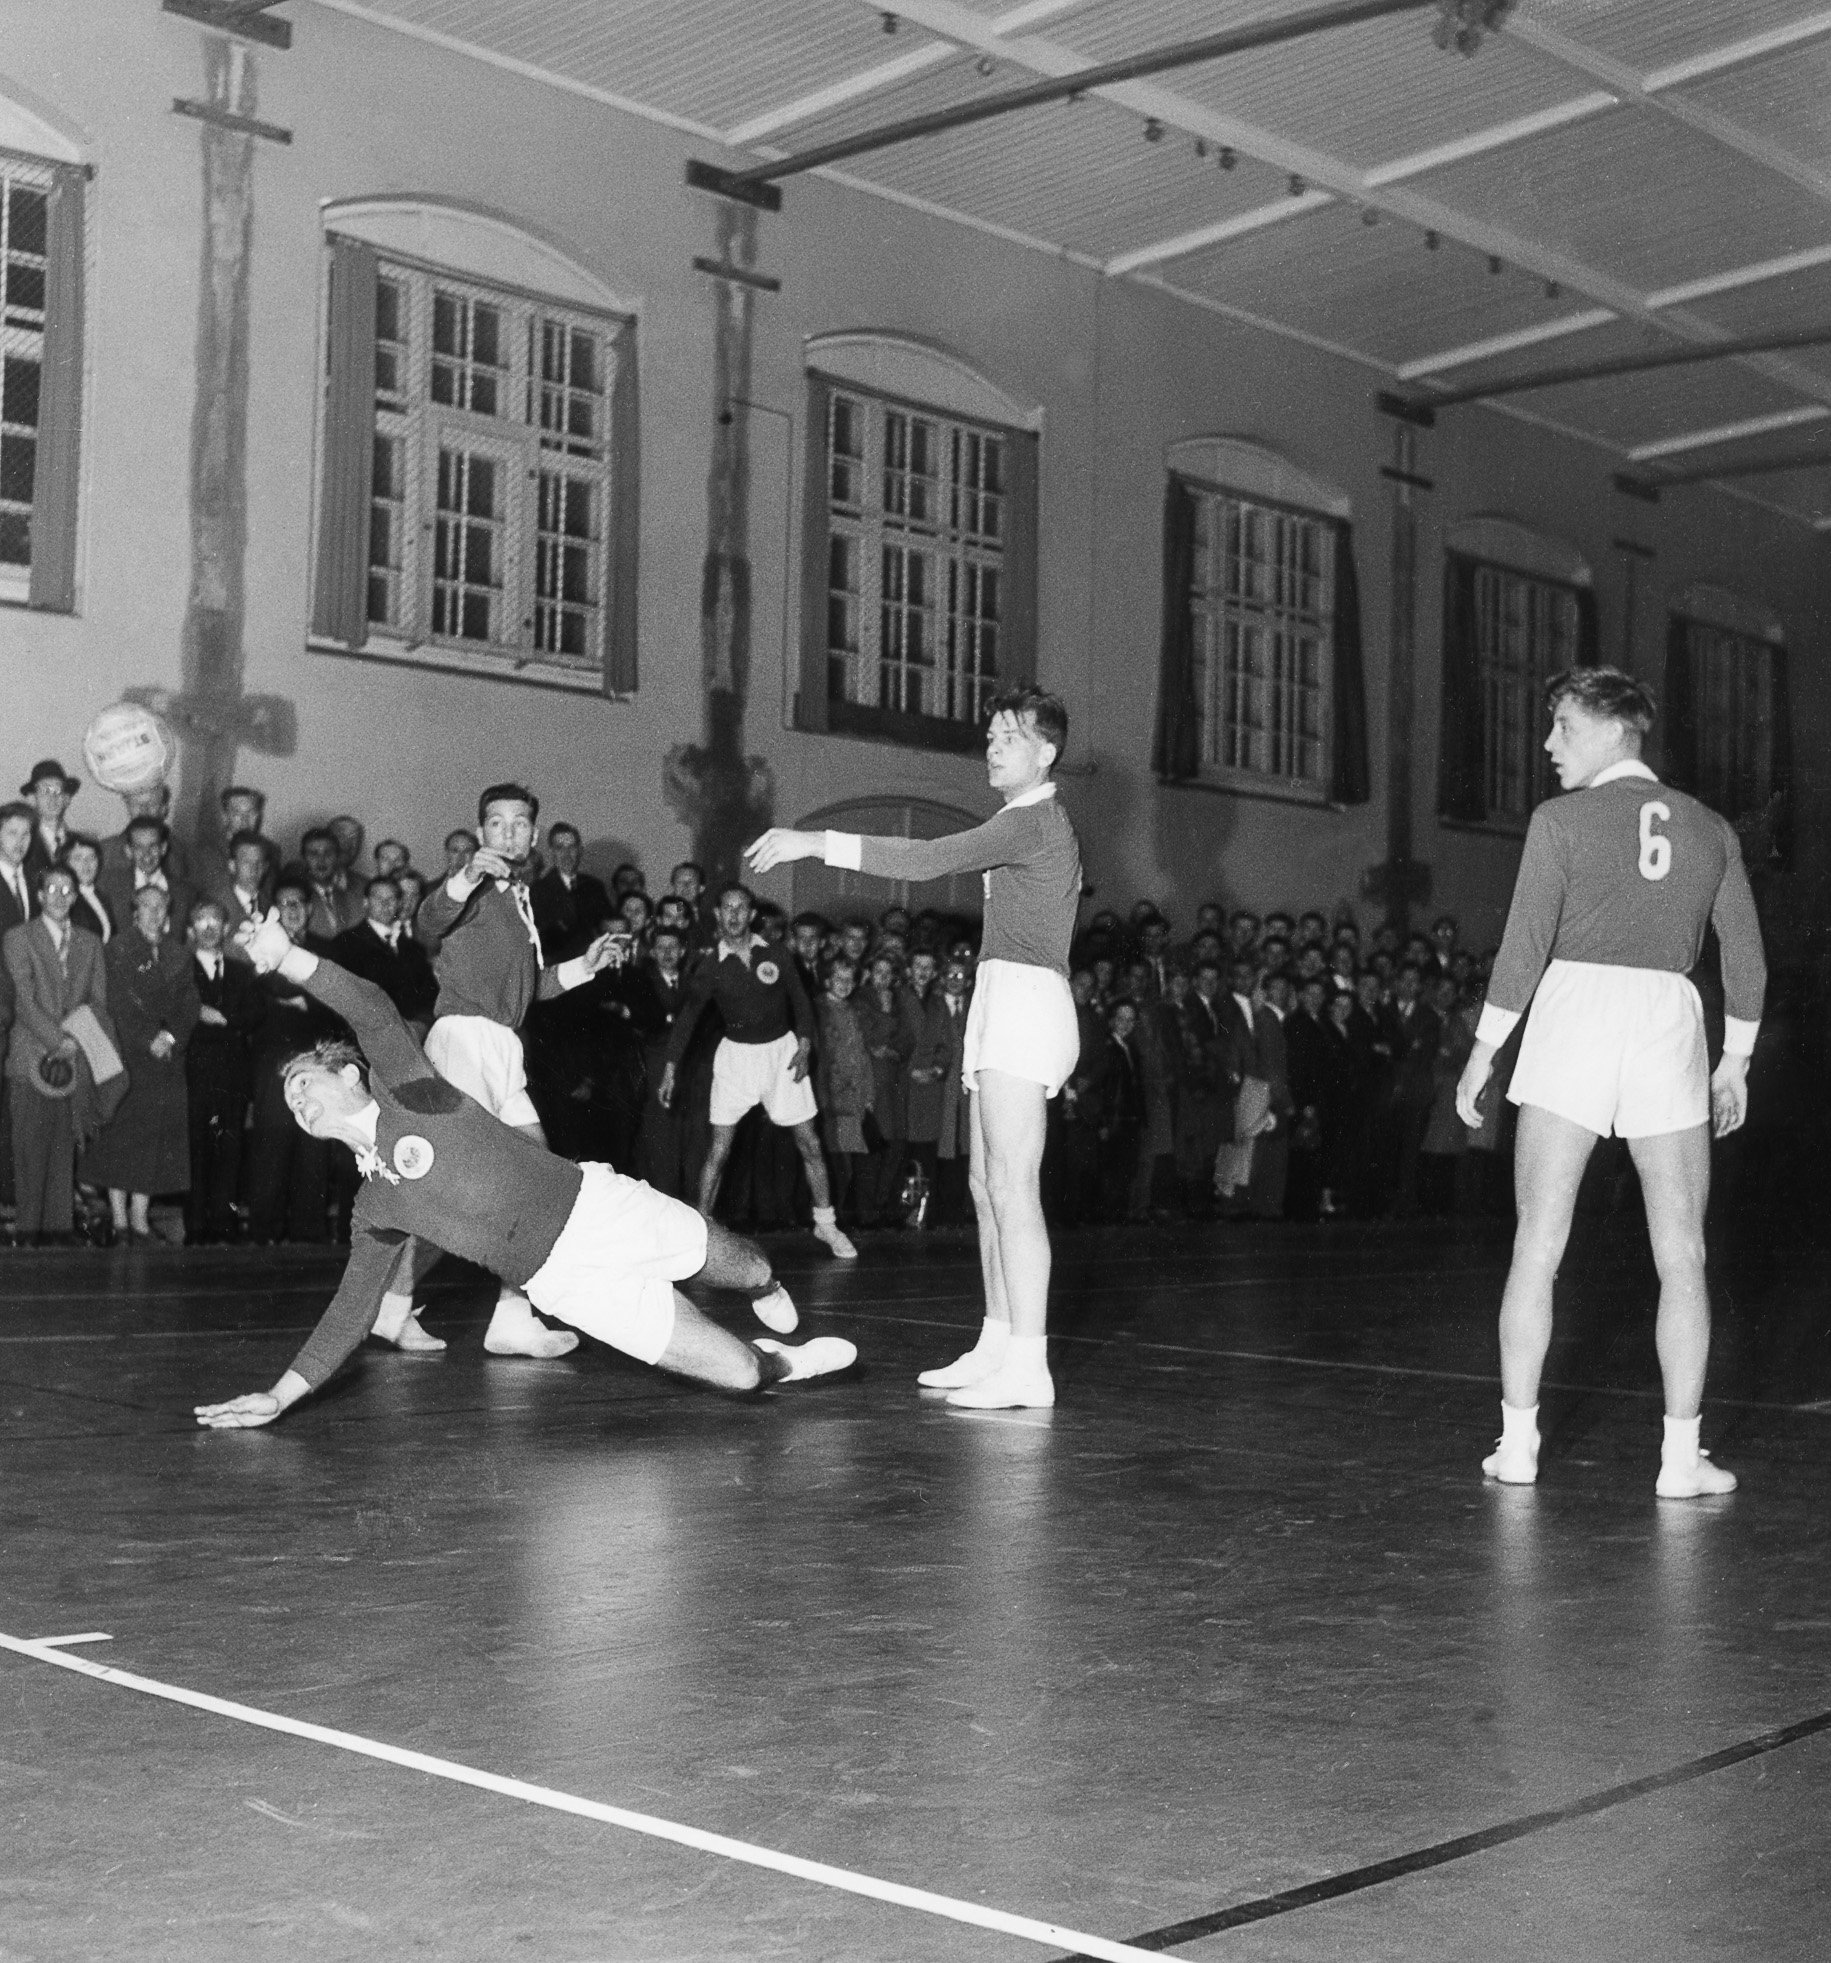 Alf Eliasson gör mål för Vikingarna i en match mot Karlskrona på 1950-talet i Berga kaserns gymnastikhus, allmänt kallad ”kolkällaren”. Foto Föreningen Idrottsarkivet